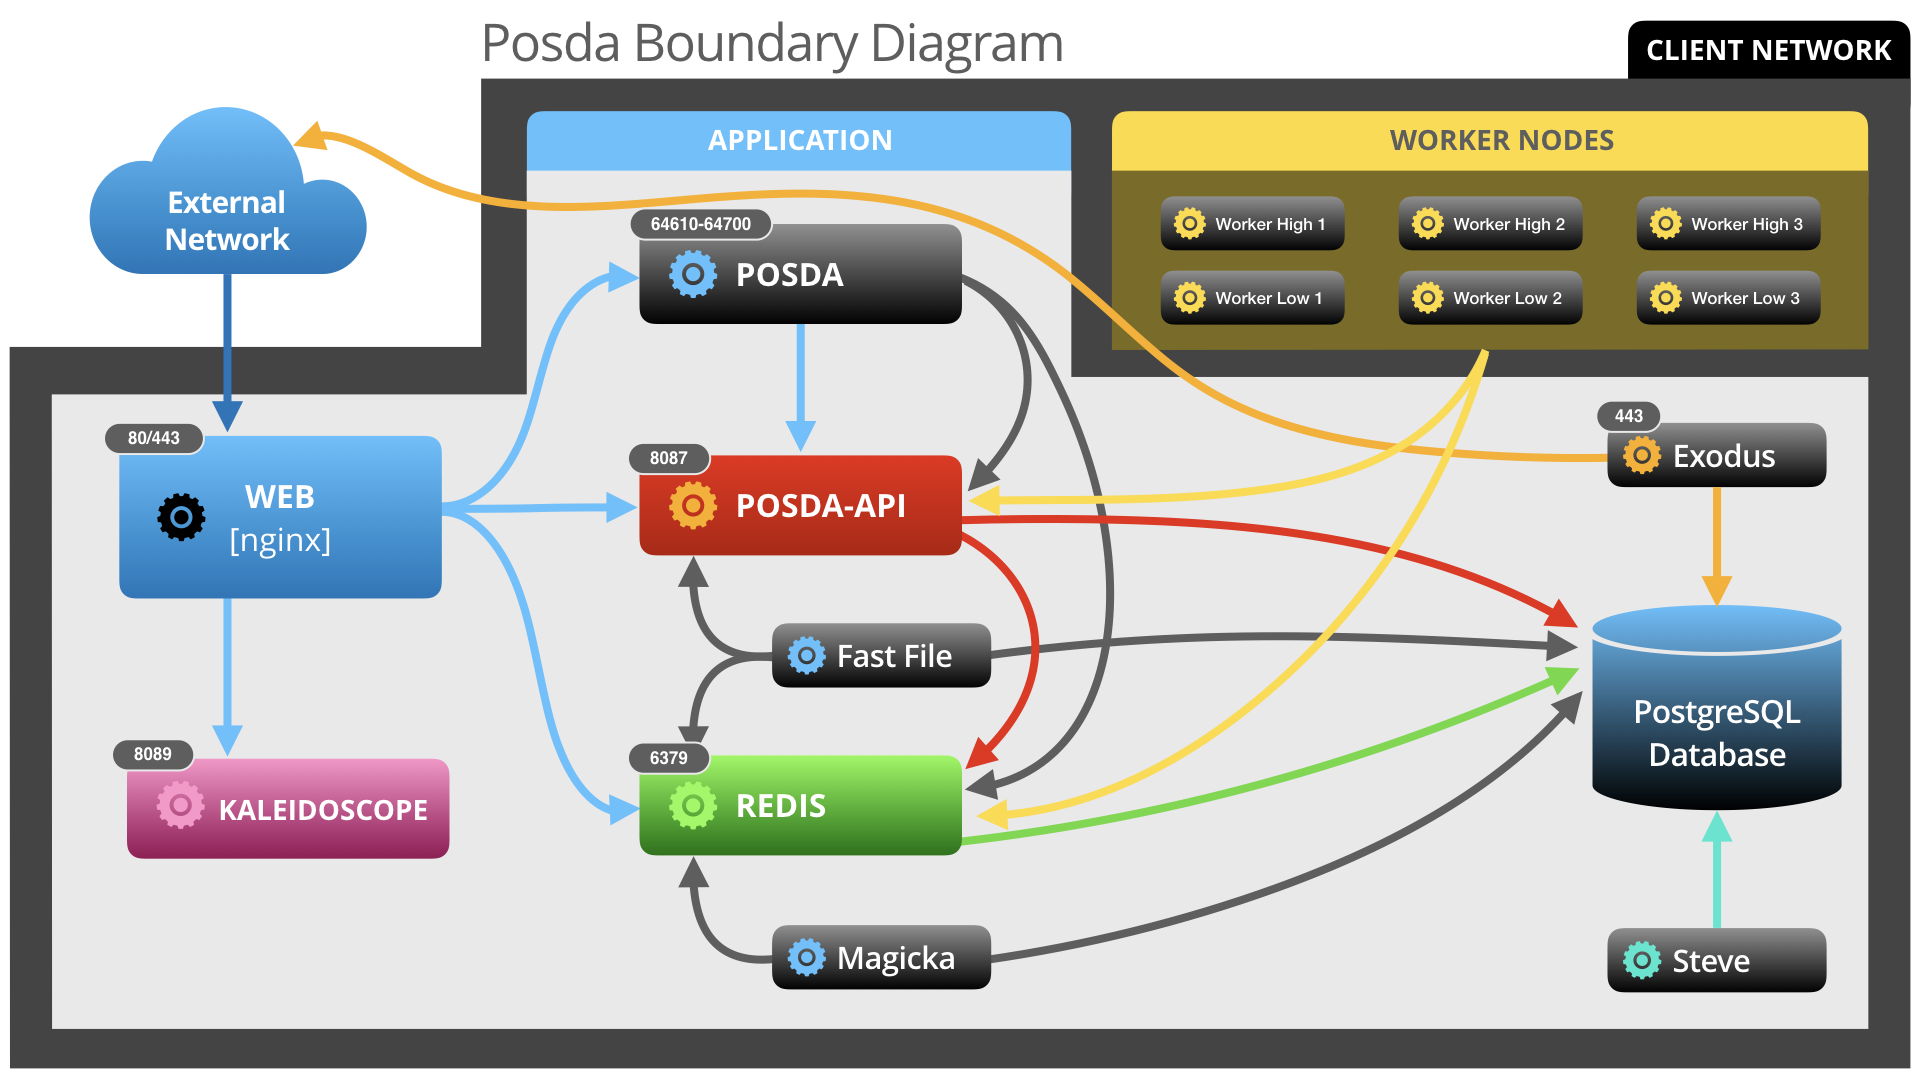 POSDA network boundary diagram